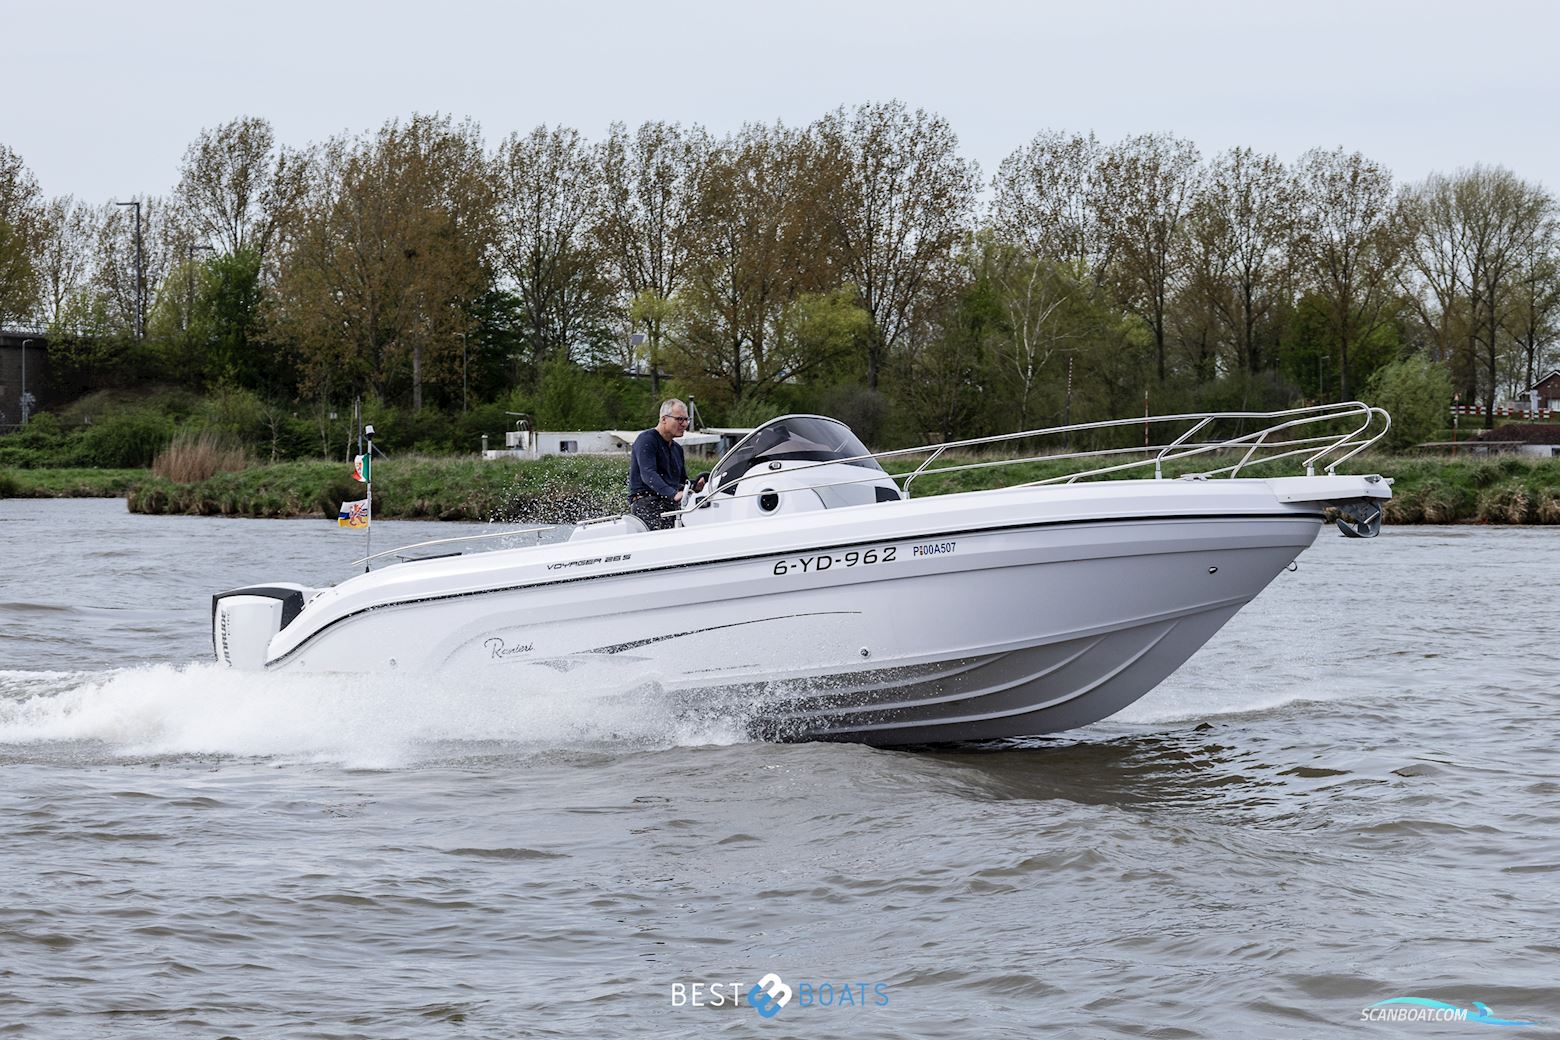 Ranieri Voyager 26S Motorbåt 2020, med Evinrude motor, Holland